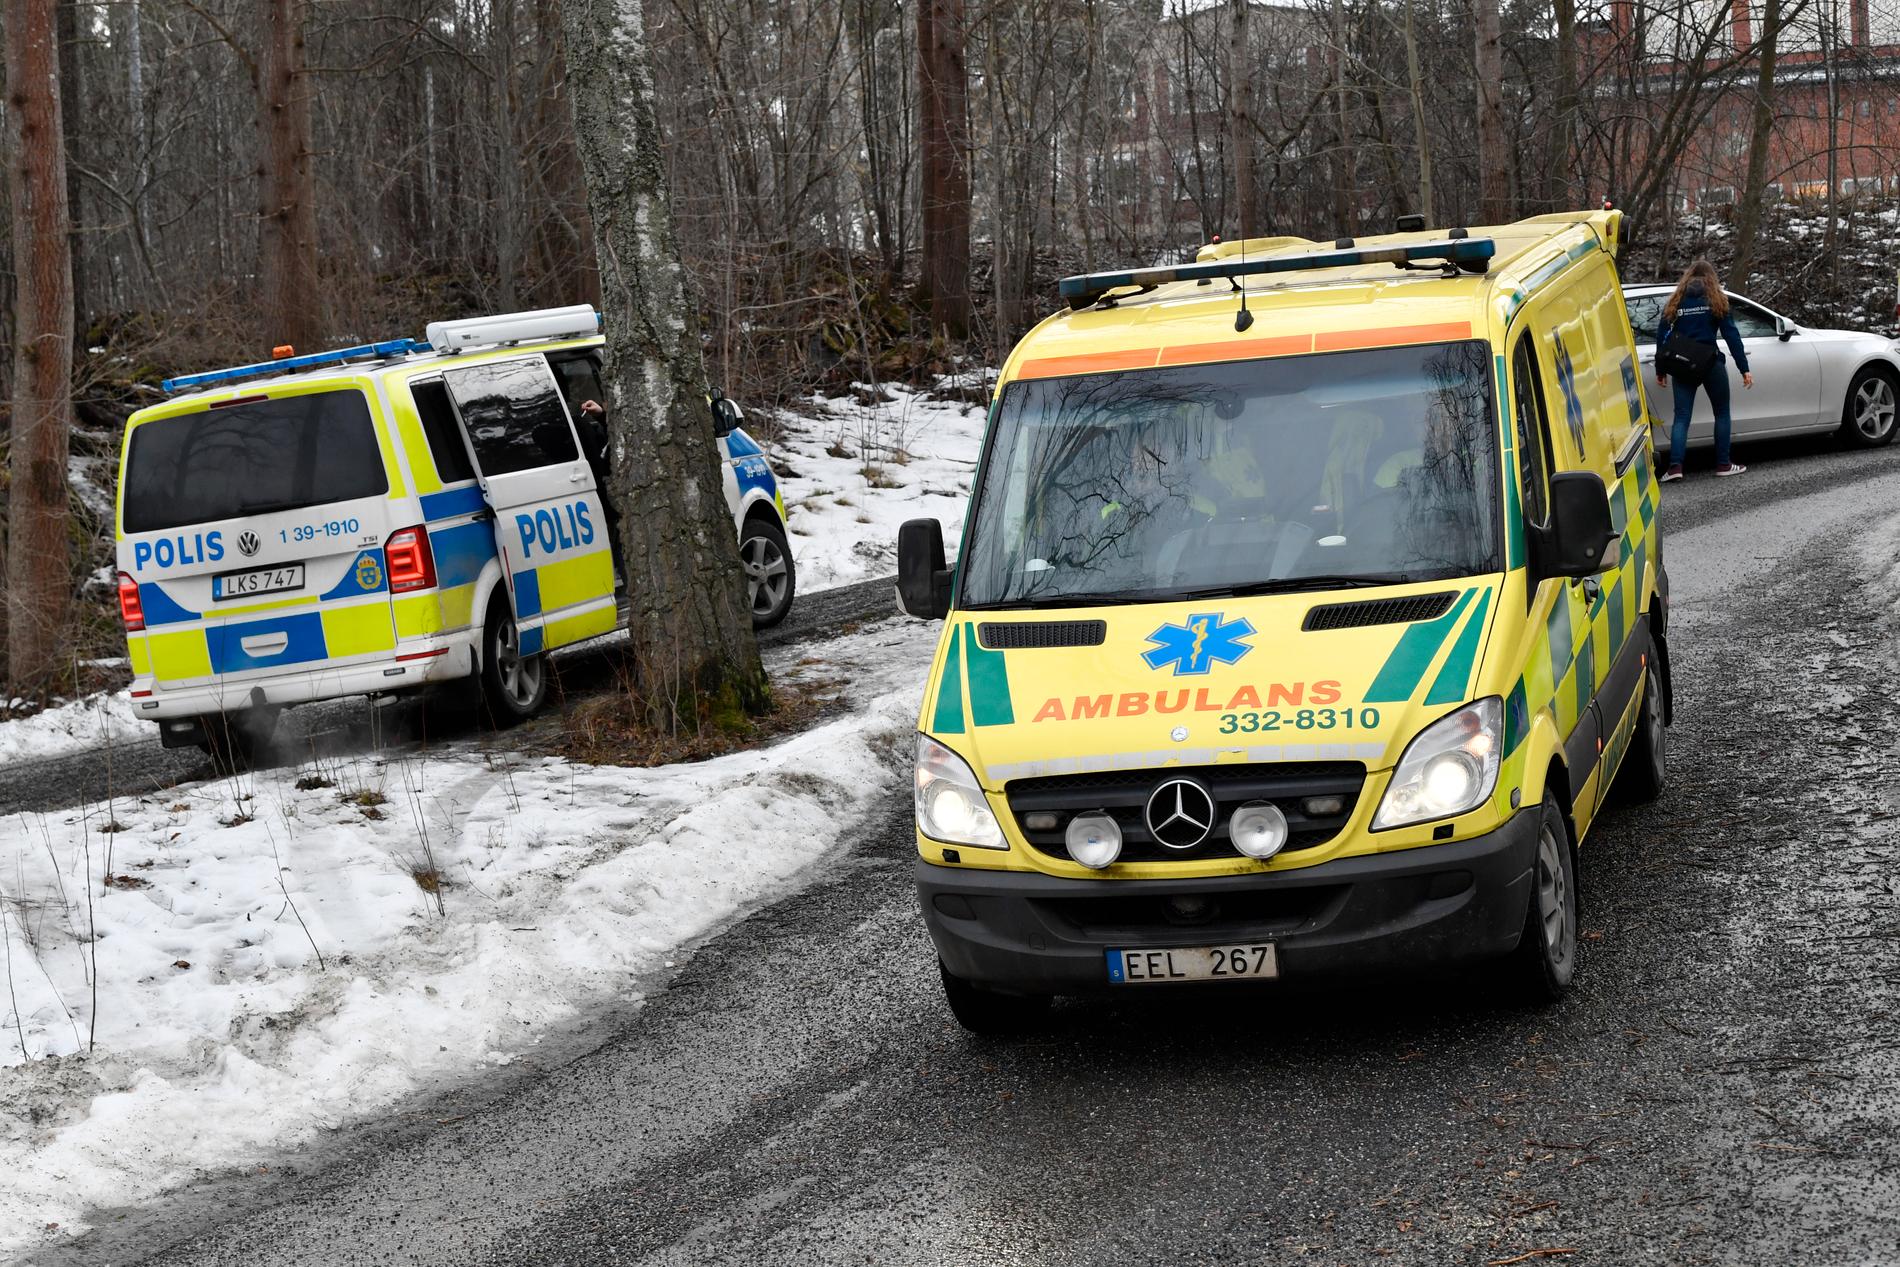 Polis och brandfordon utanför skolan på Lidingö. Skolan utrymdes sedan ett antal barn insjuknat under oklara omständigheter. Arkivbild.